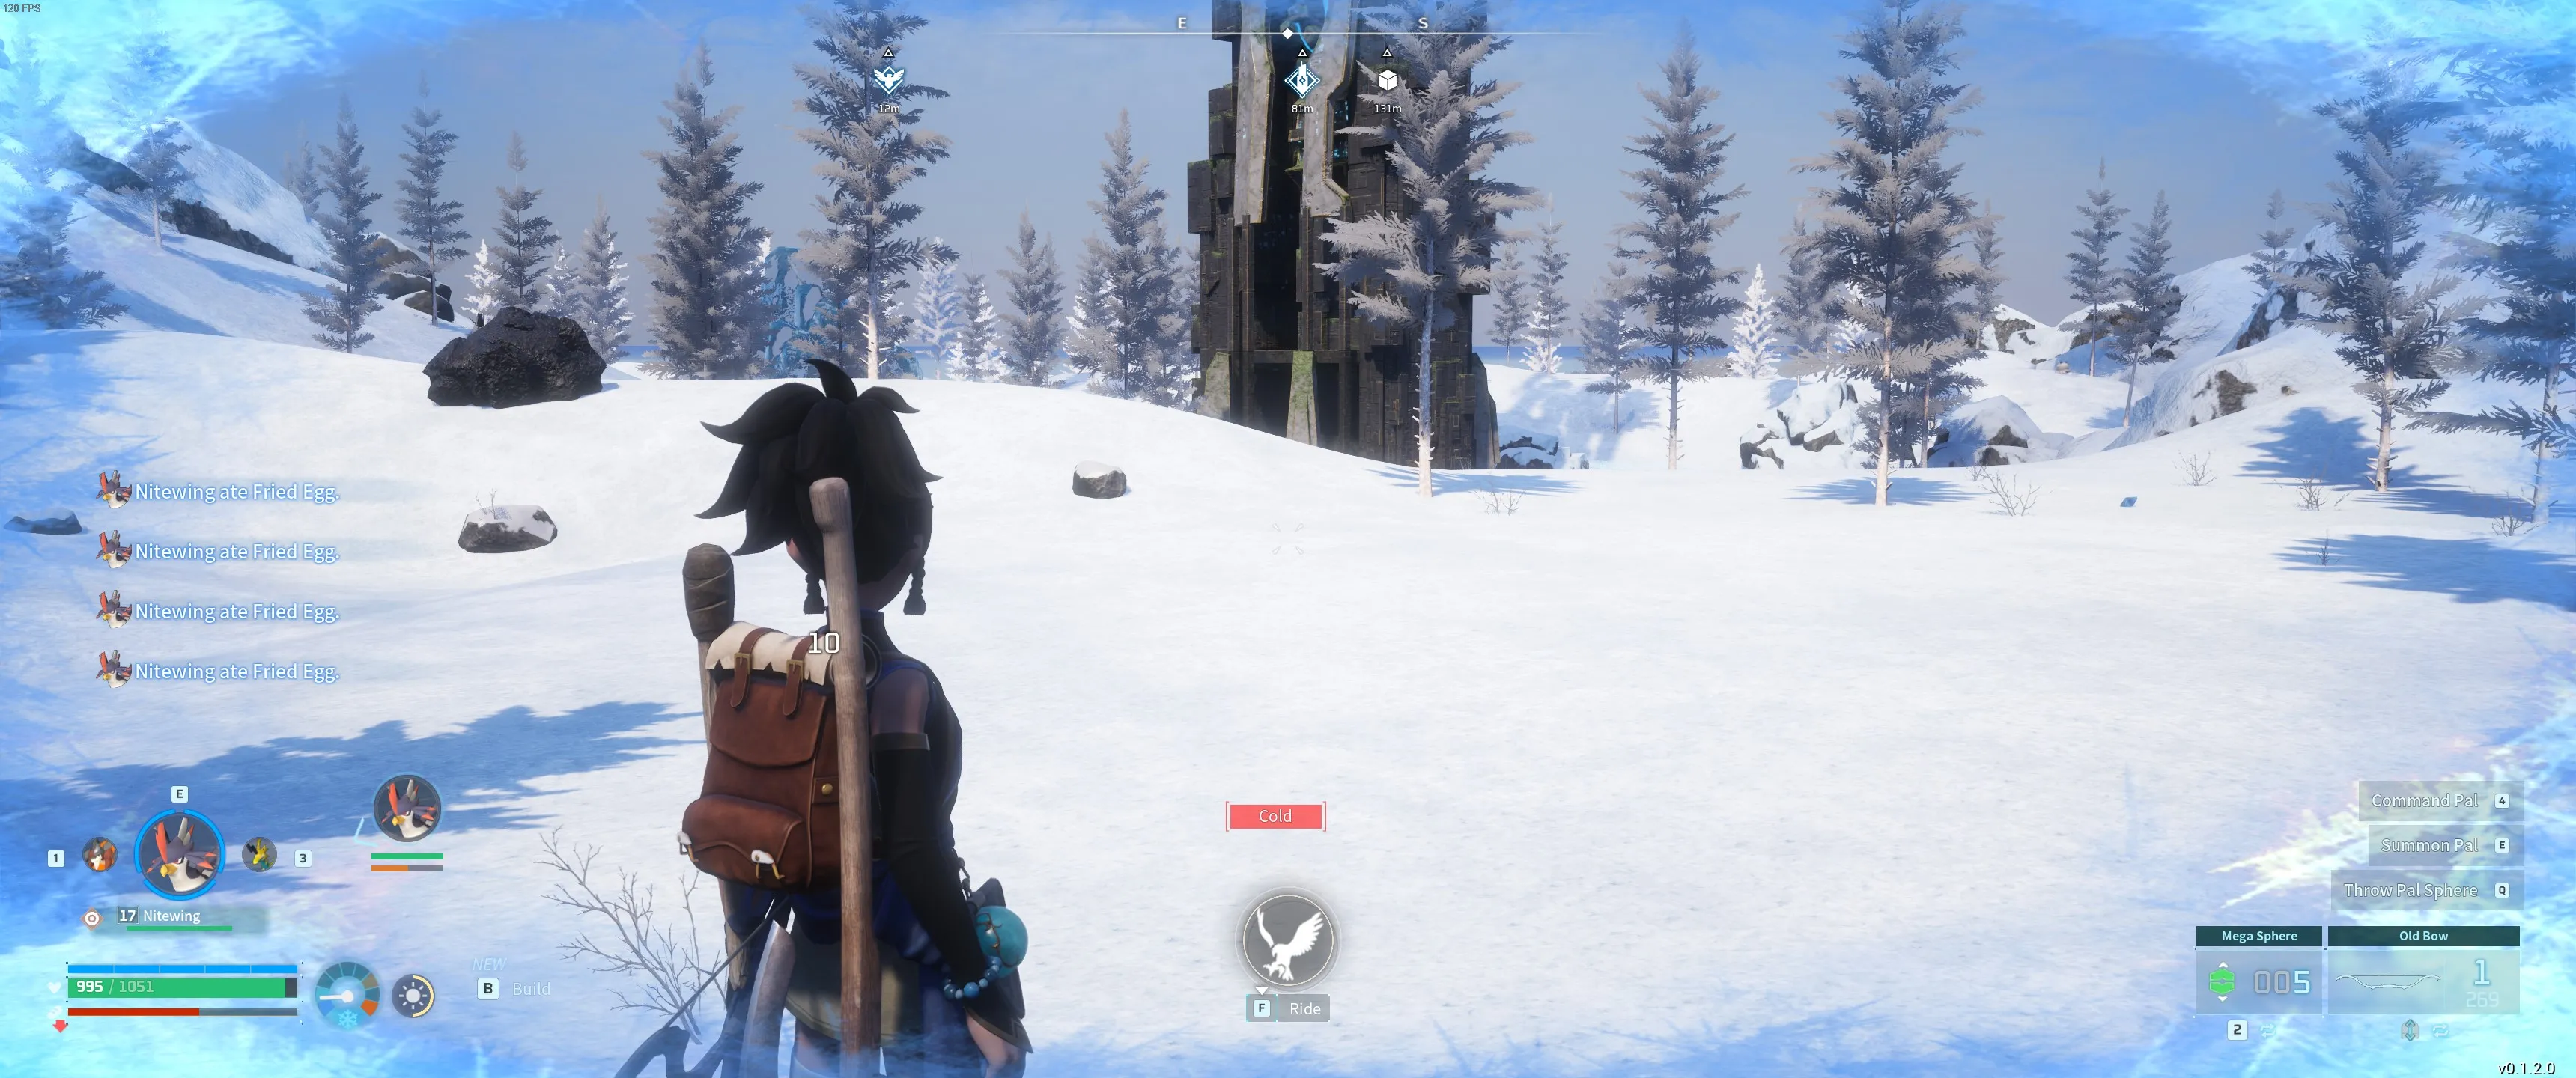 Palworld: 玩家站在苔原上的塔旁边